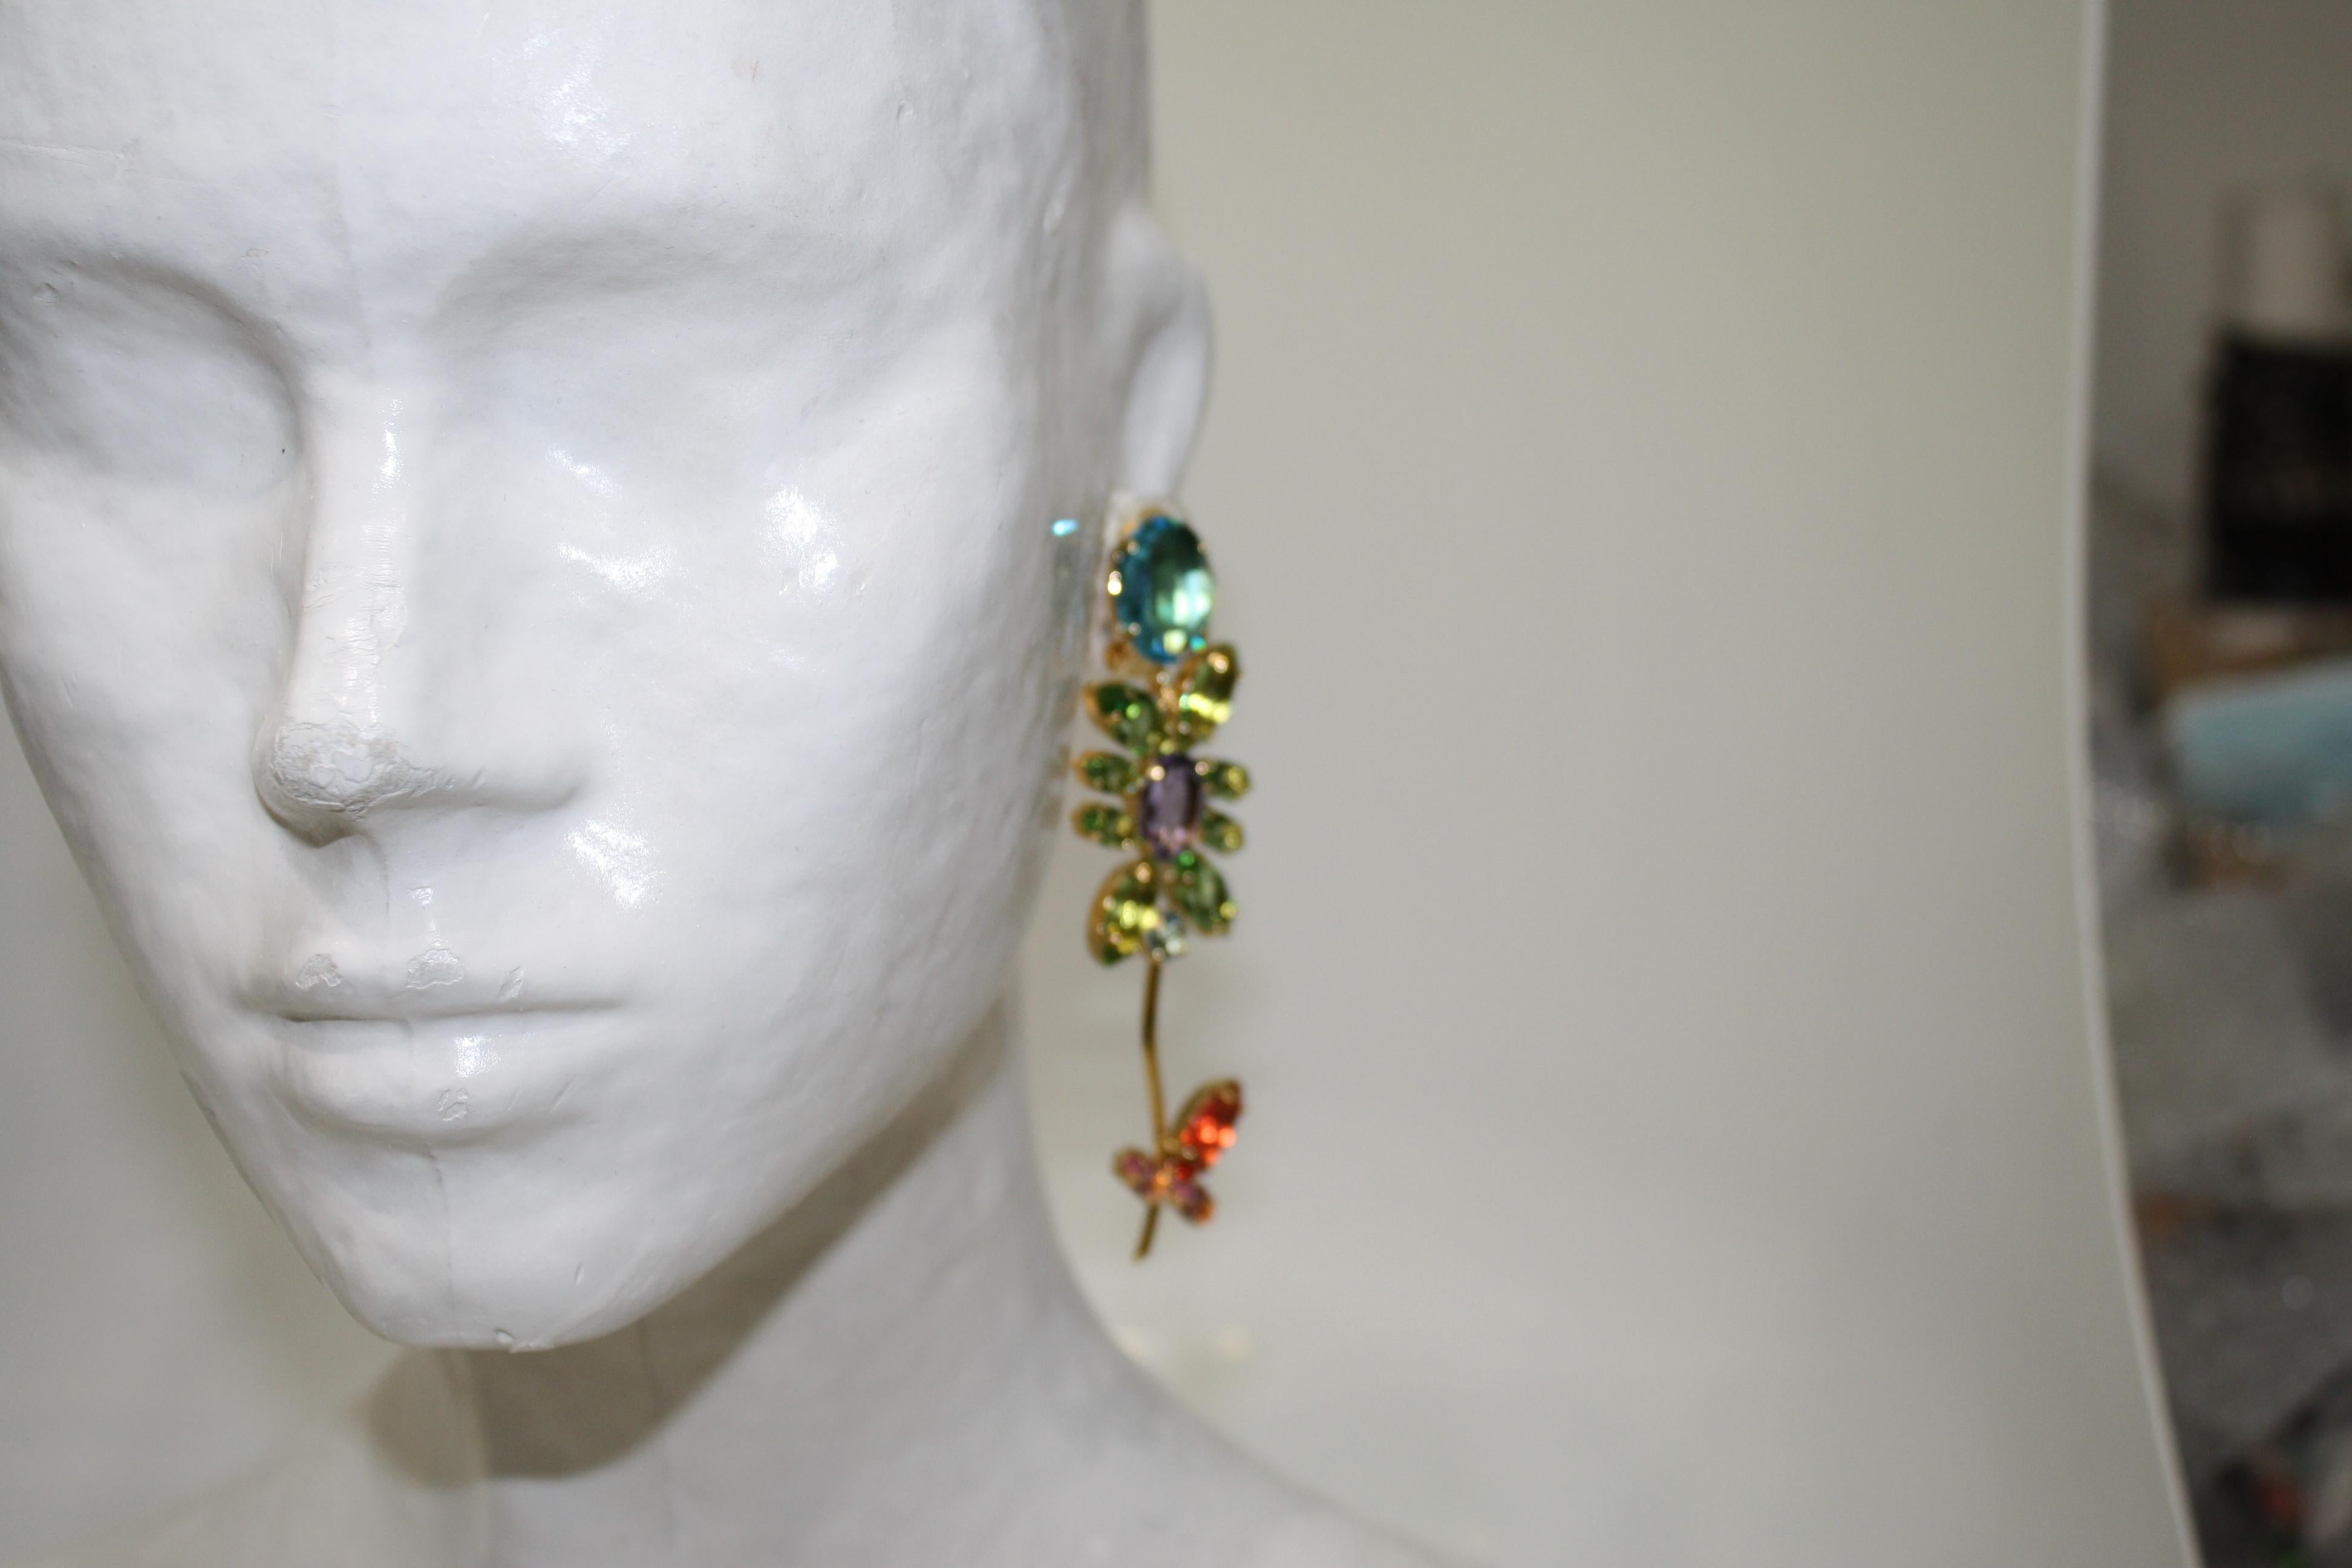 Diese Clip-Ohrringe aus der Kollektion von Philippe Ferrandis sind mit Swarovski-Kristallen auf vergoldetem Messing gefertigt.

Philippe Ferrandis ist seit 1986 als Parurier in Paris tätig. Er kreiert zwei Kollektionen pro Jahr, die immer wieder